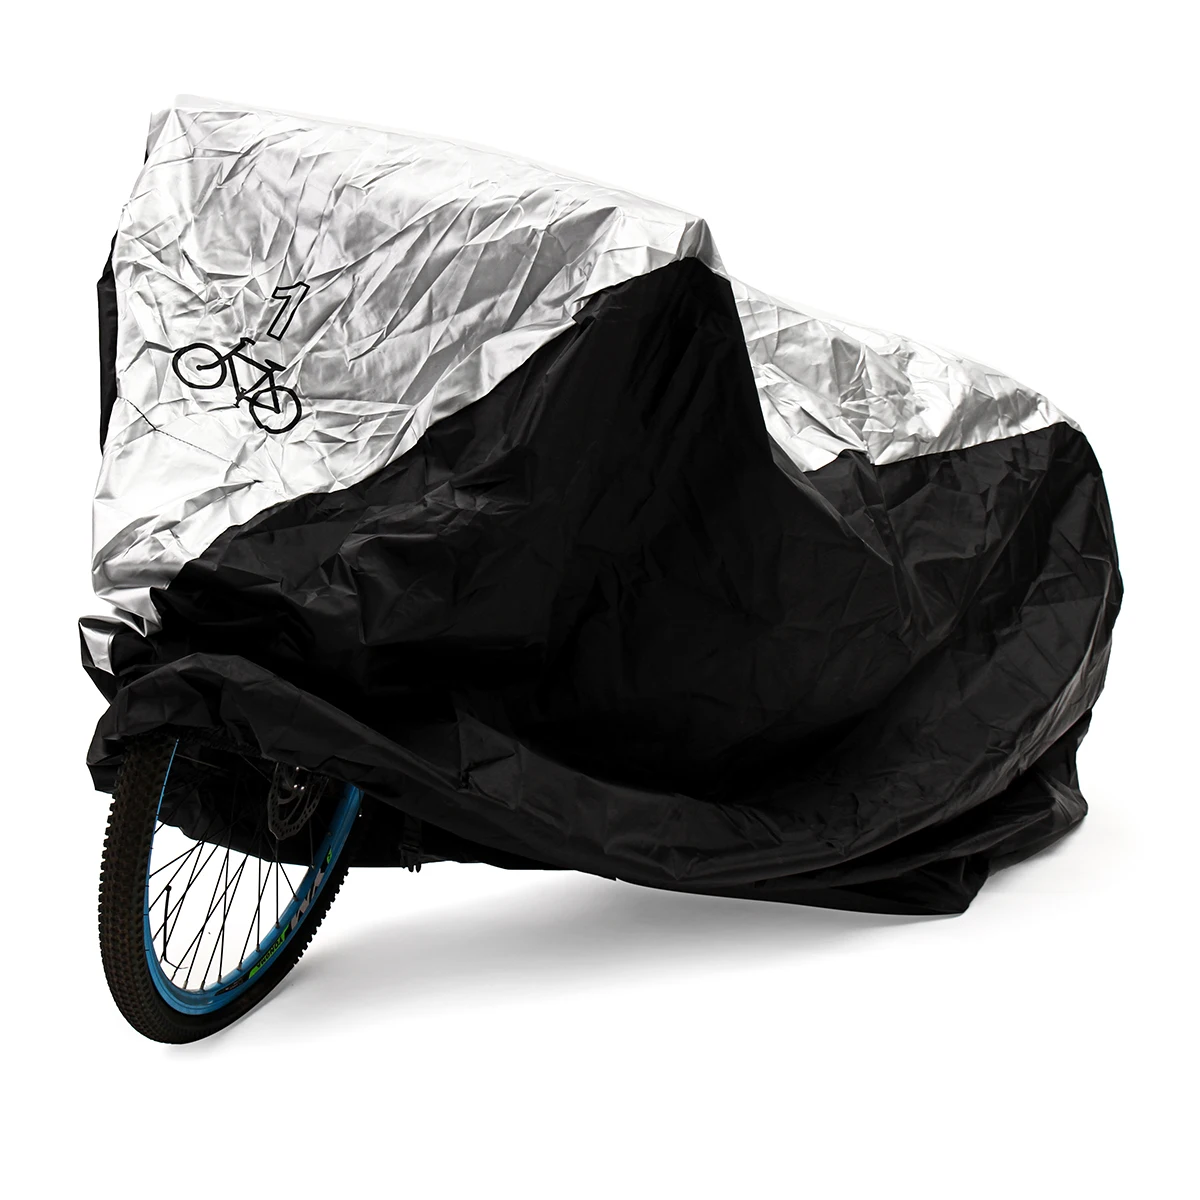 3 размера Универсальный водонепроницаемый велосипед Защитное снаряжение велосипед Велоспорт Мотоцикл покрывает УФ протектор детали для навеса